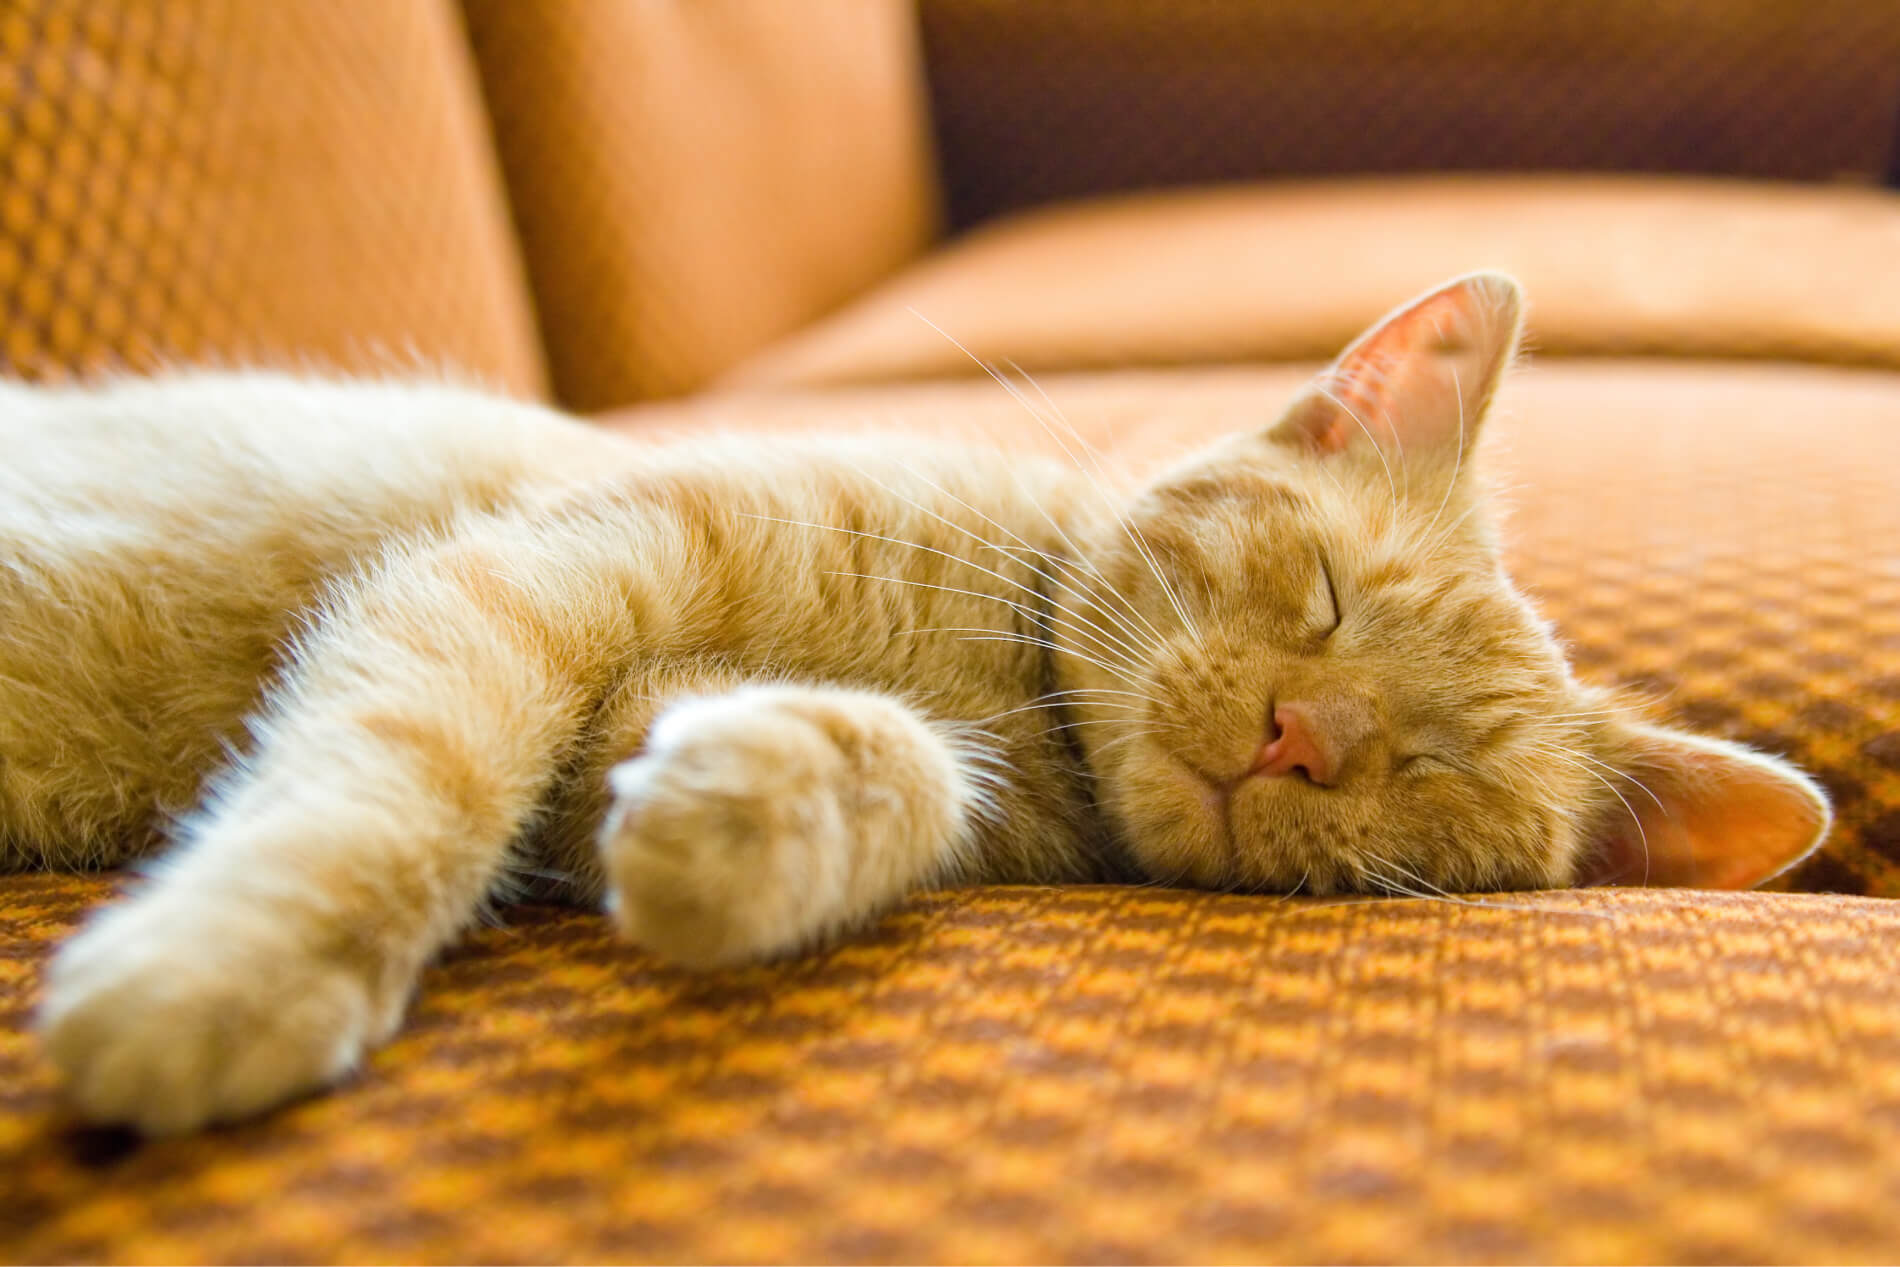 El gato duerme mucho: ¿a qué se debe?